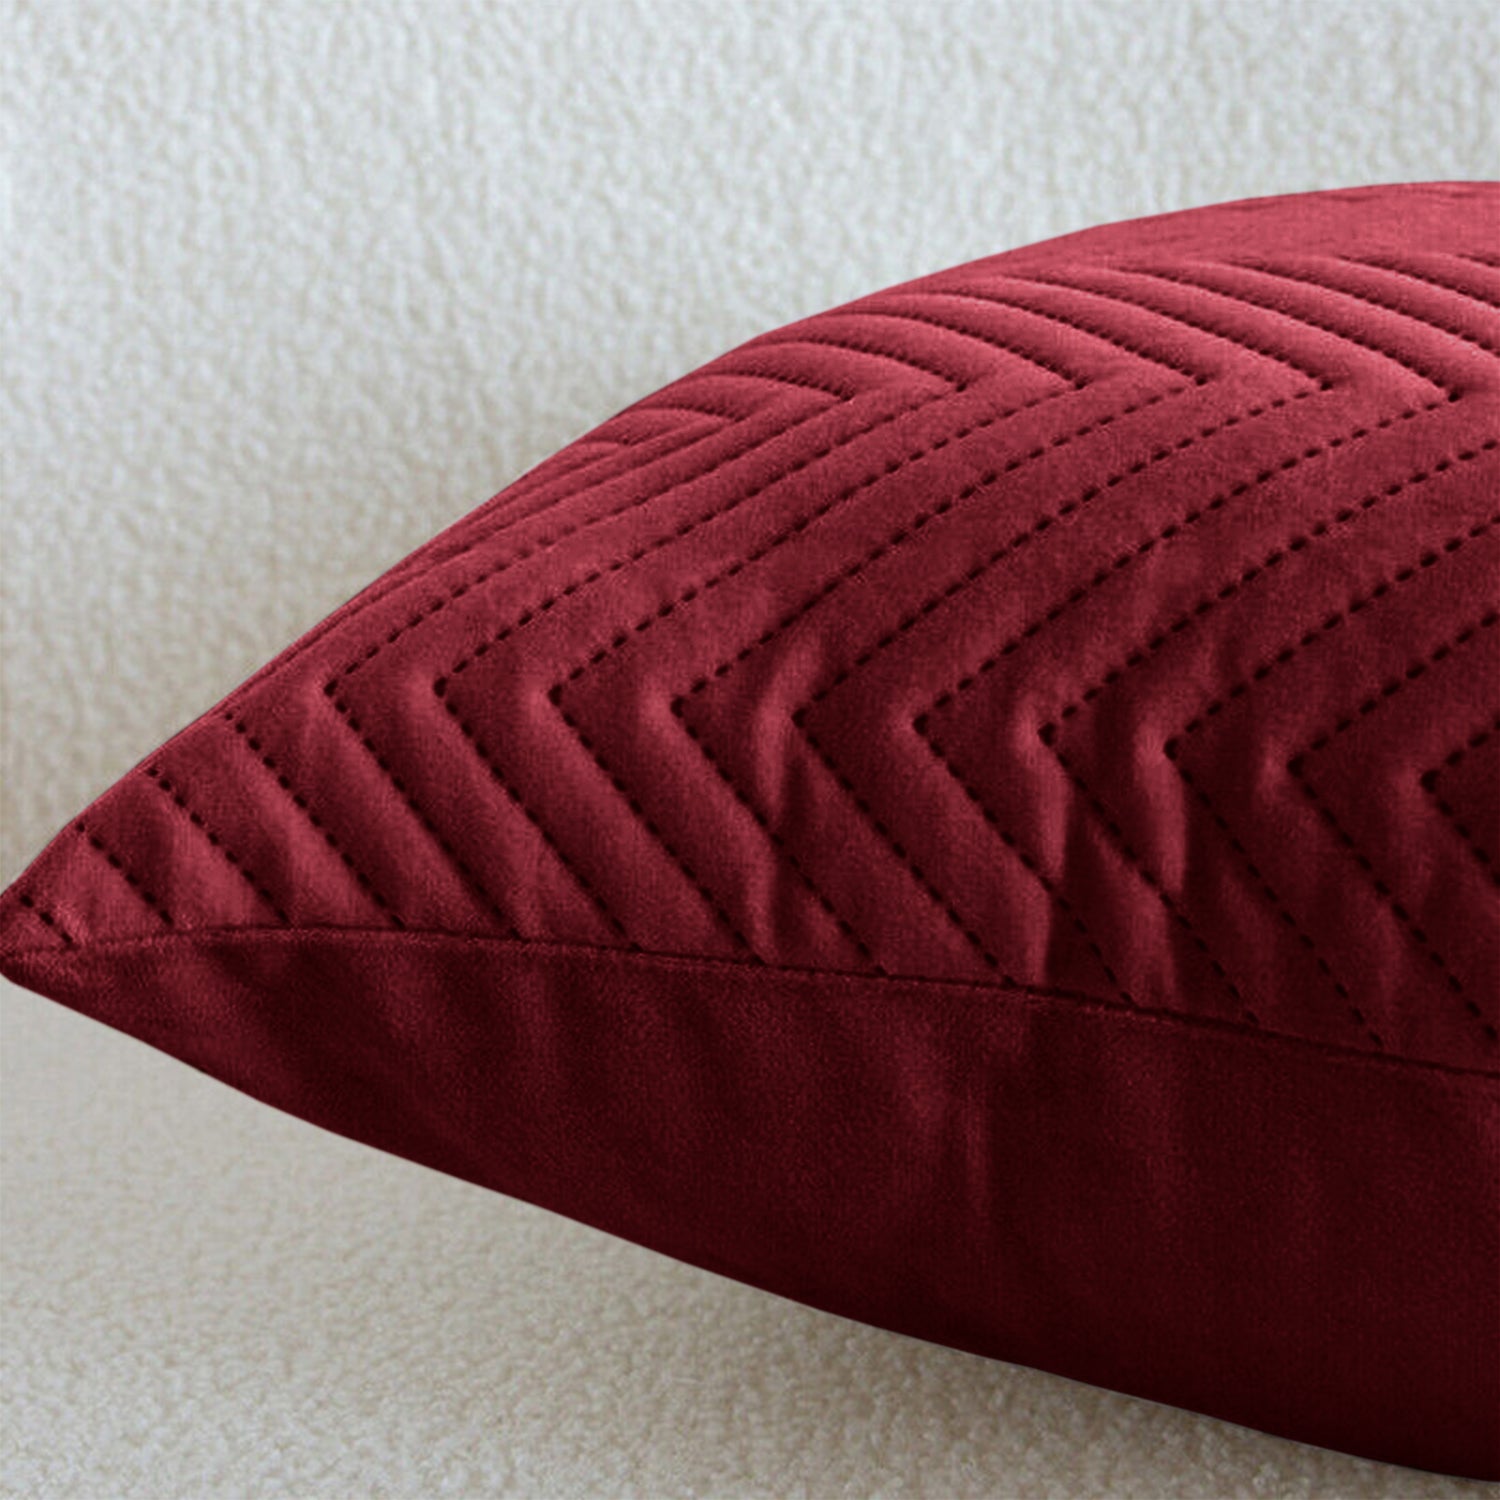 Burgundy Chevron Design Velvet Cushion Covers